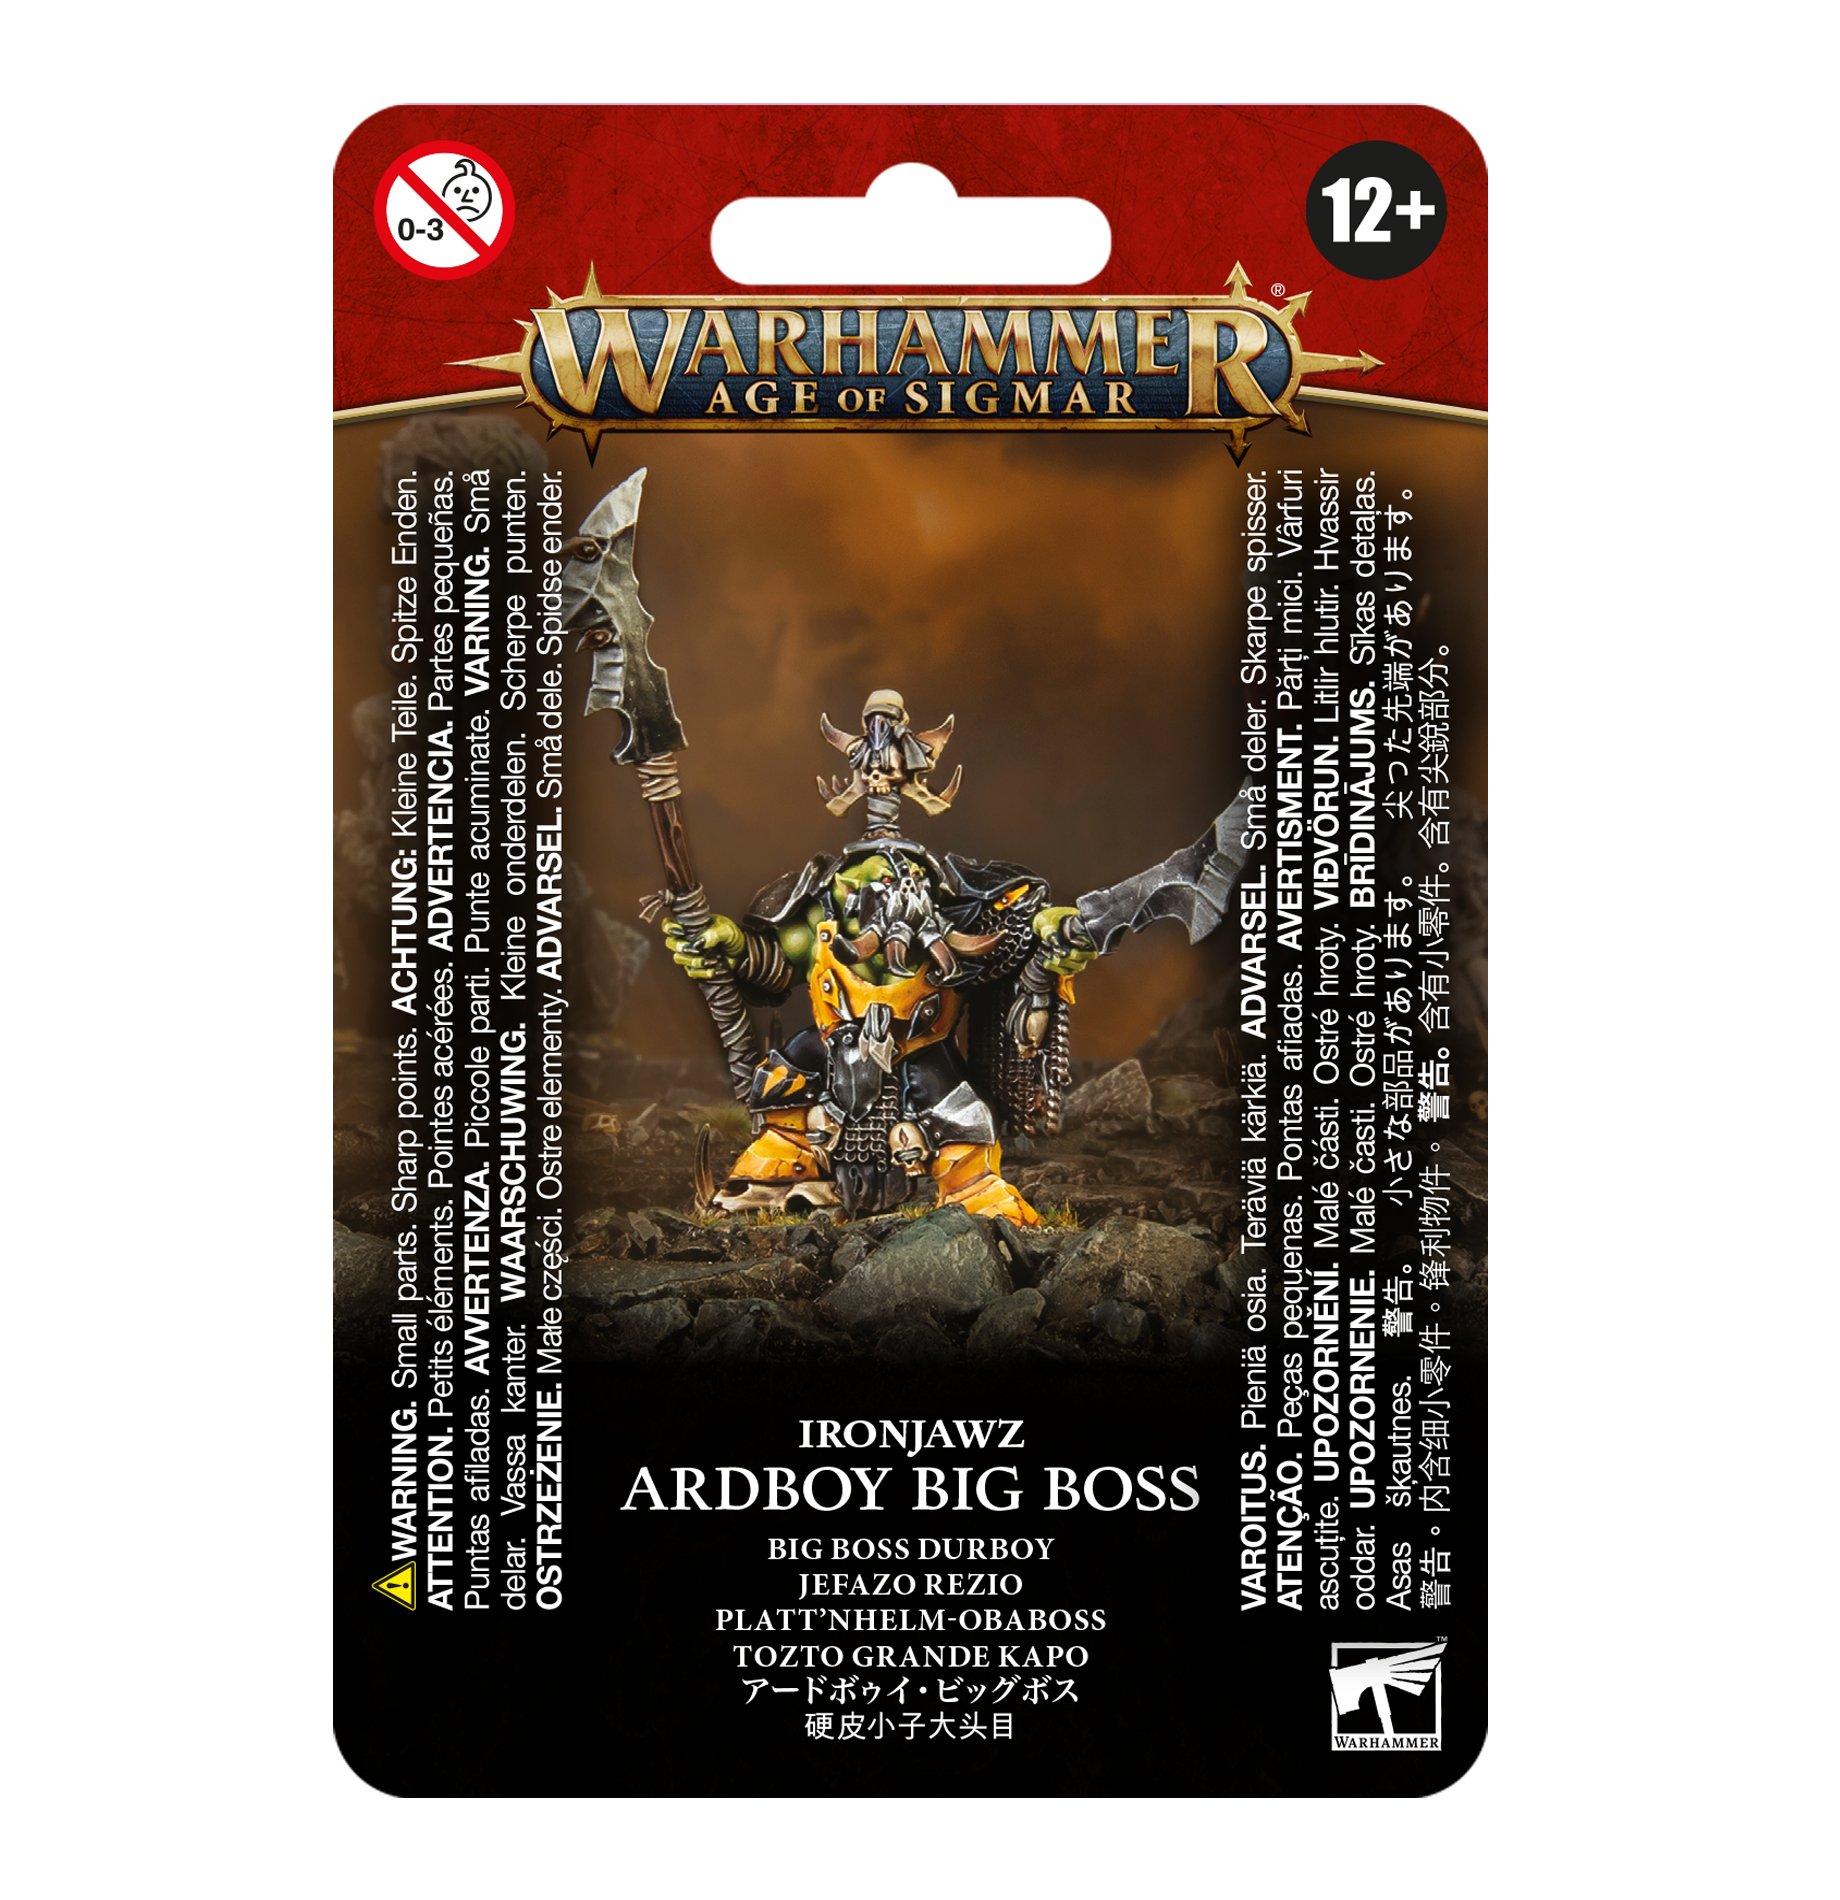 Warhammer Age of Sigmar: Orruk Warclans: Ardboy Big Boss 